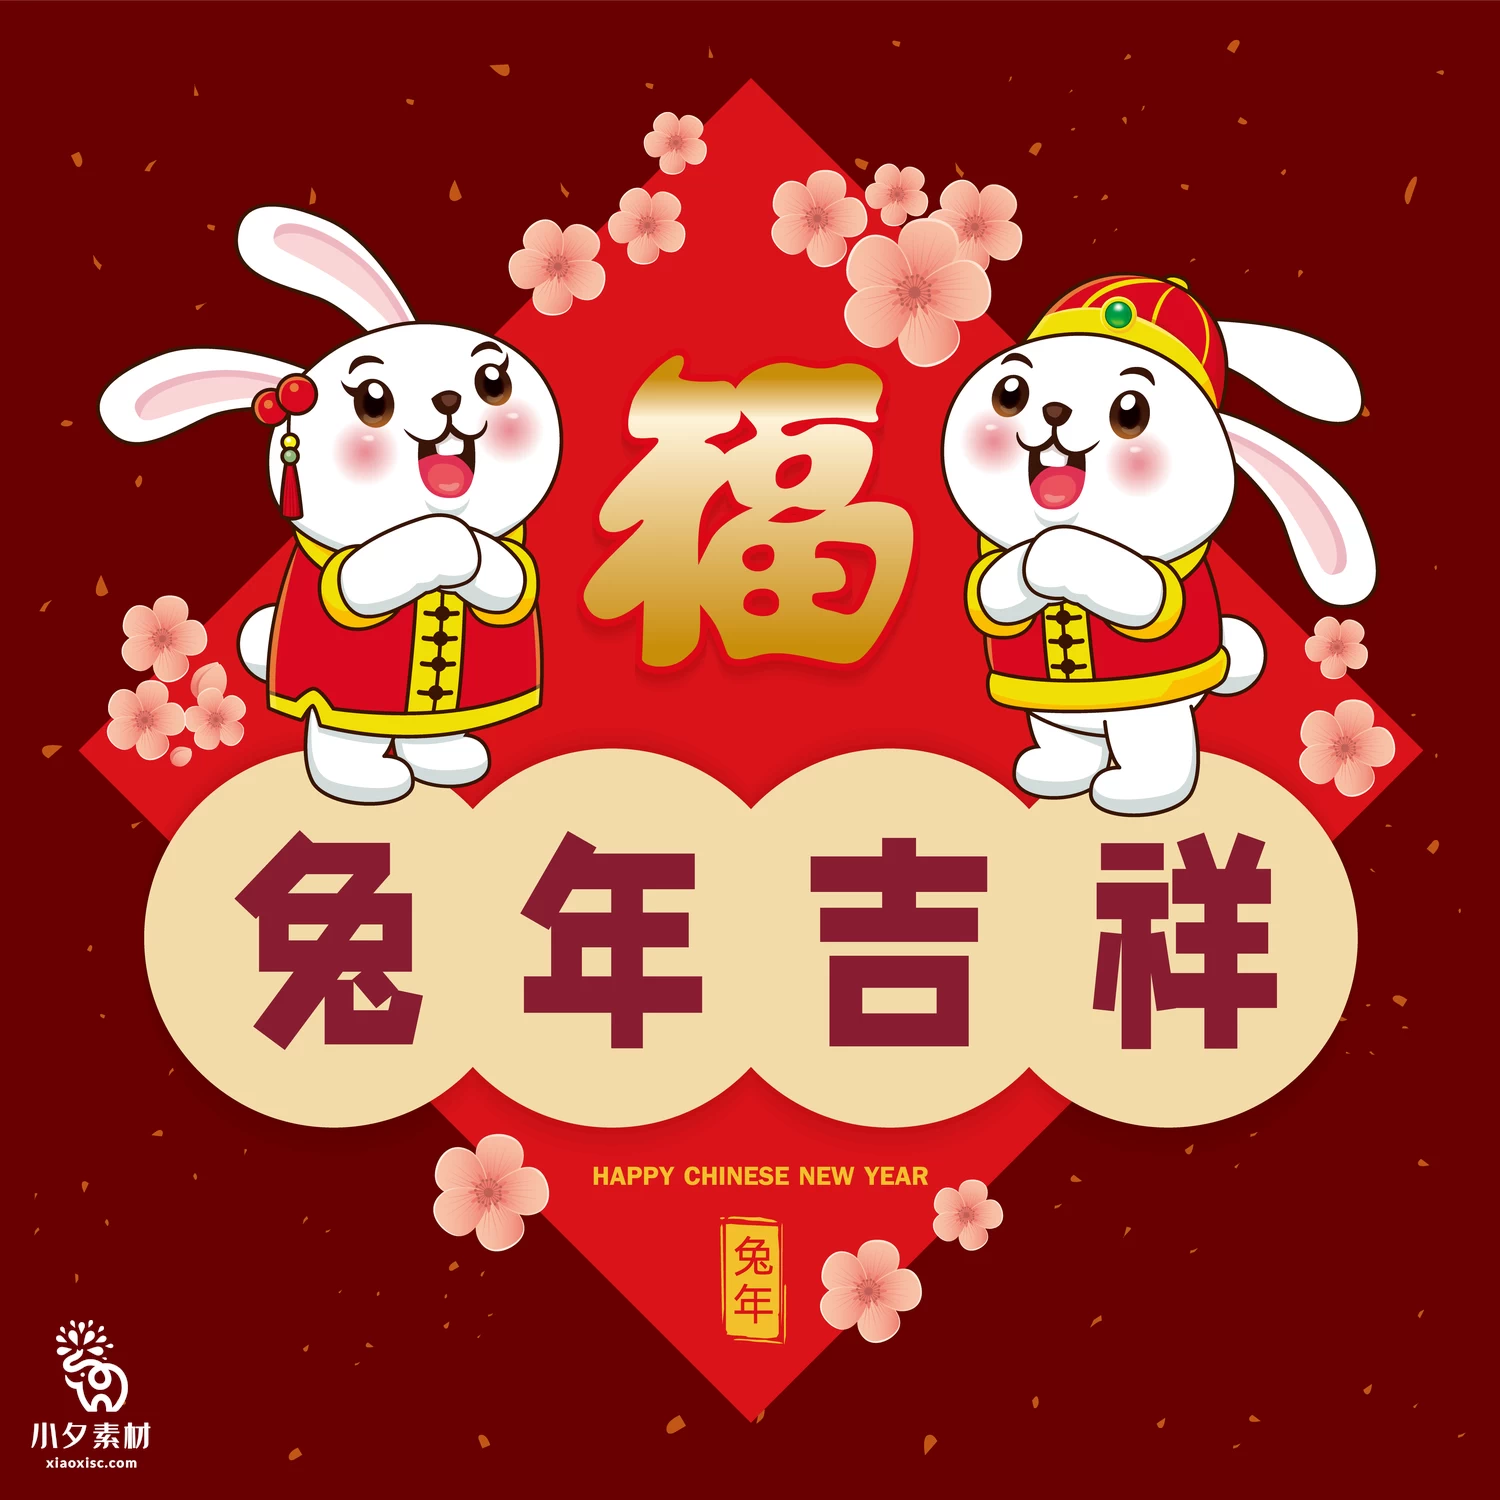 2023年兔年恭贺新春新年快乐喜庆节日宣传海报图片AI矢量设计素材【014】